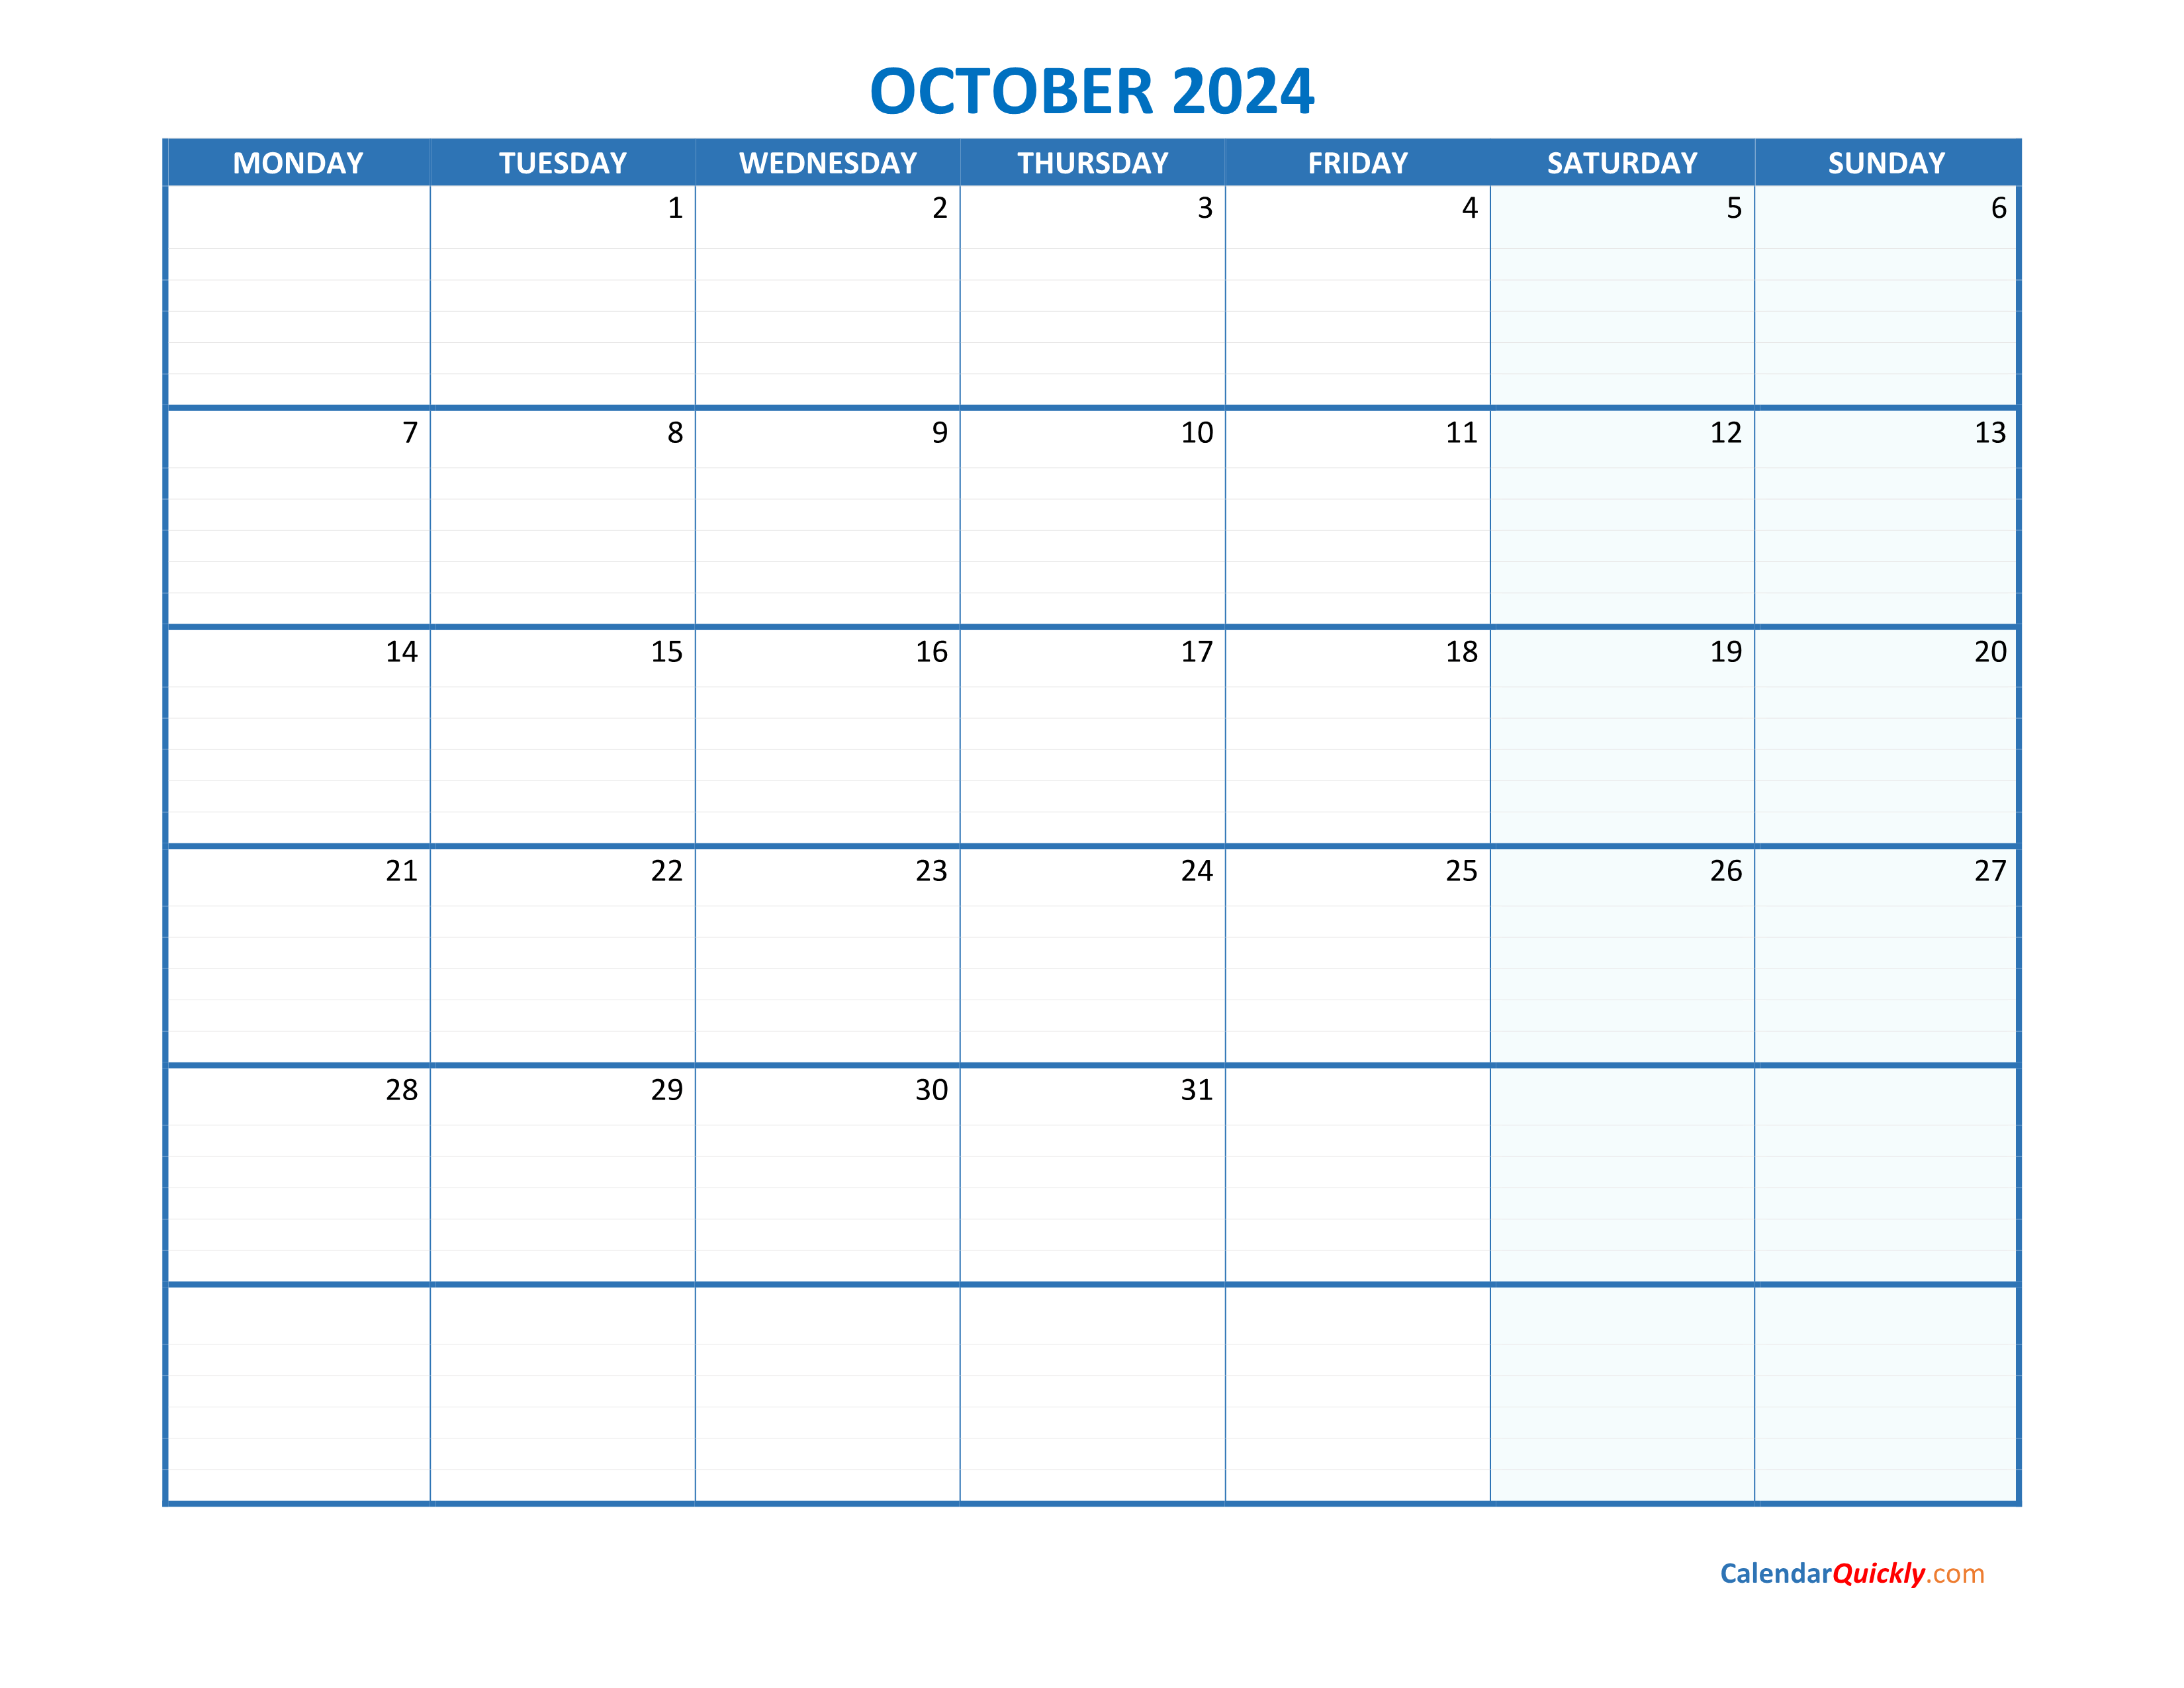 October Monday 2024 Blank Calendar | Calendar Quickly